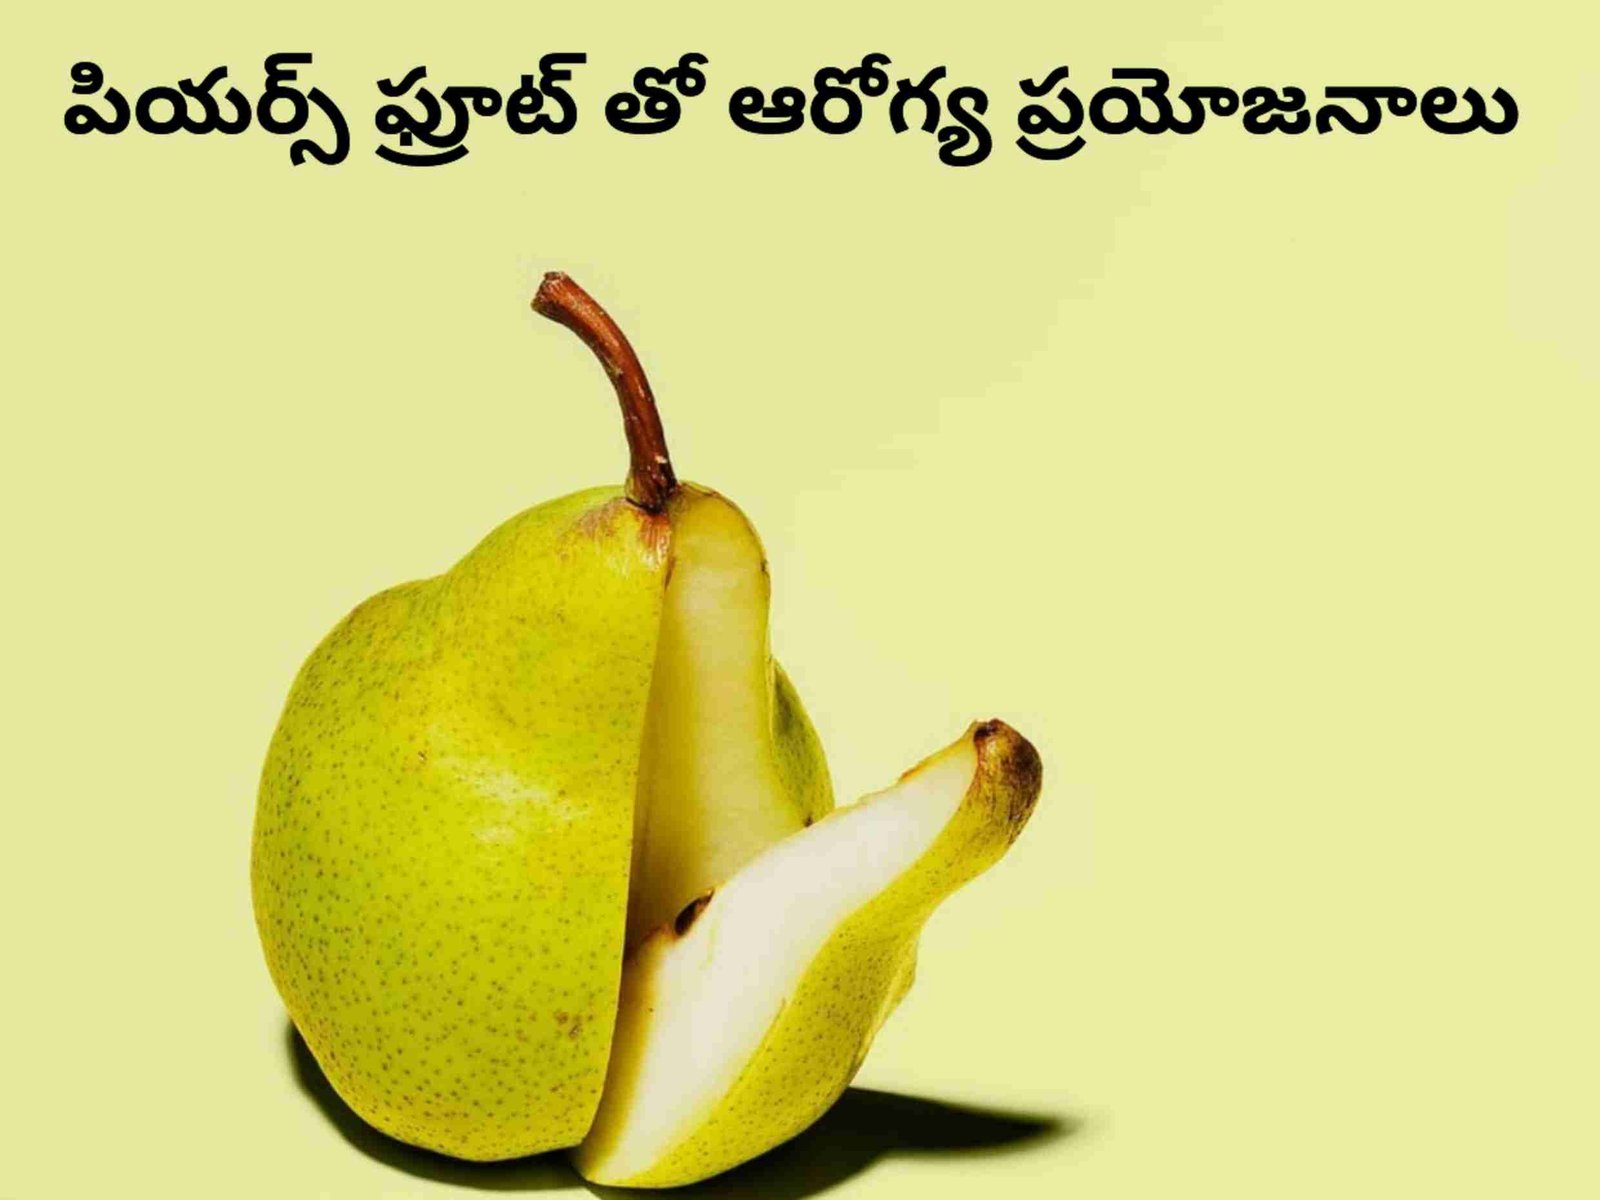 Pear fruit in telugu : పియర్ ఫ్రూట్ వల్ల కలిగే ఆరోగ్య ప్రయోజనాలు ...